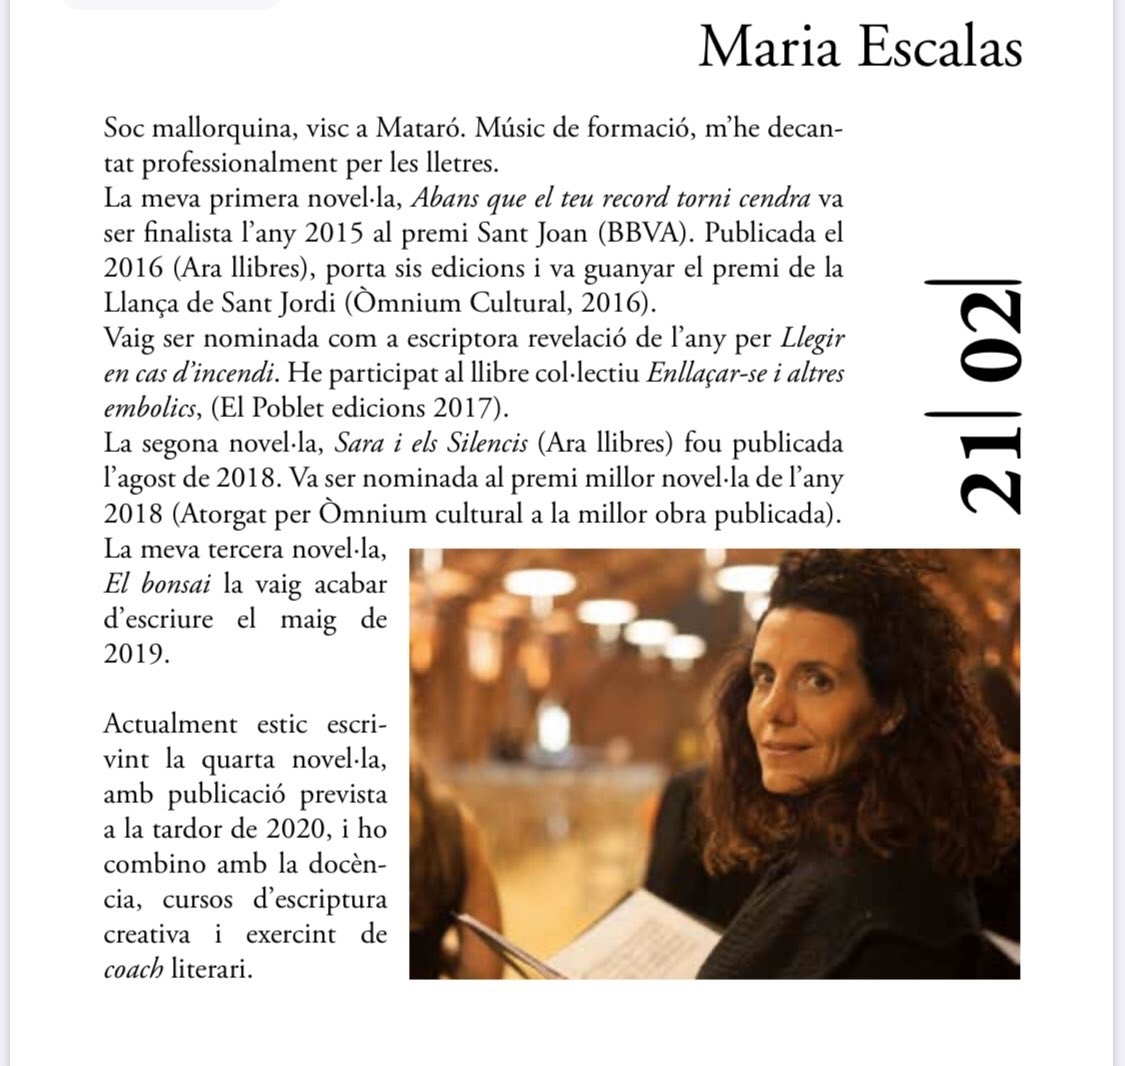 Les escriptores Maria Escalas i Roser Amills al cicle Paraules 20 de Palafolls que organitza la revista CLASP